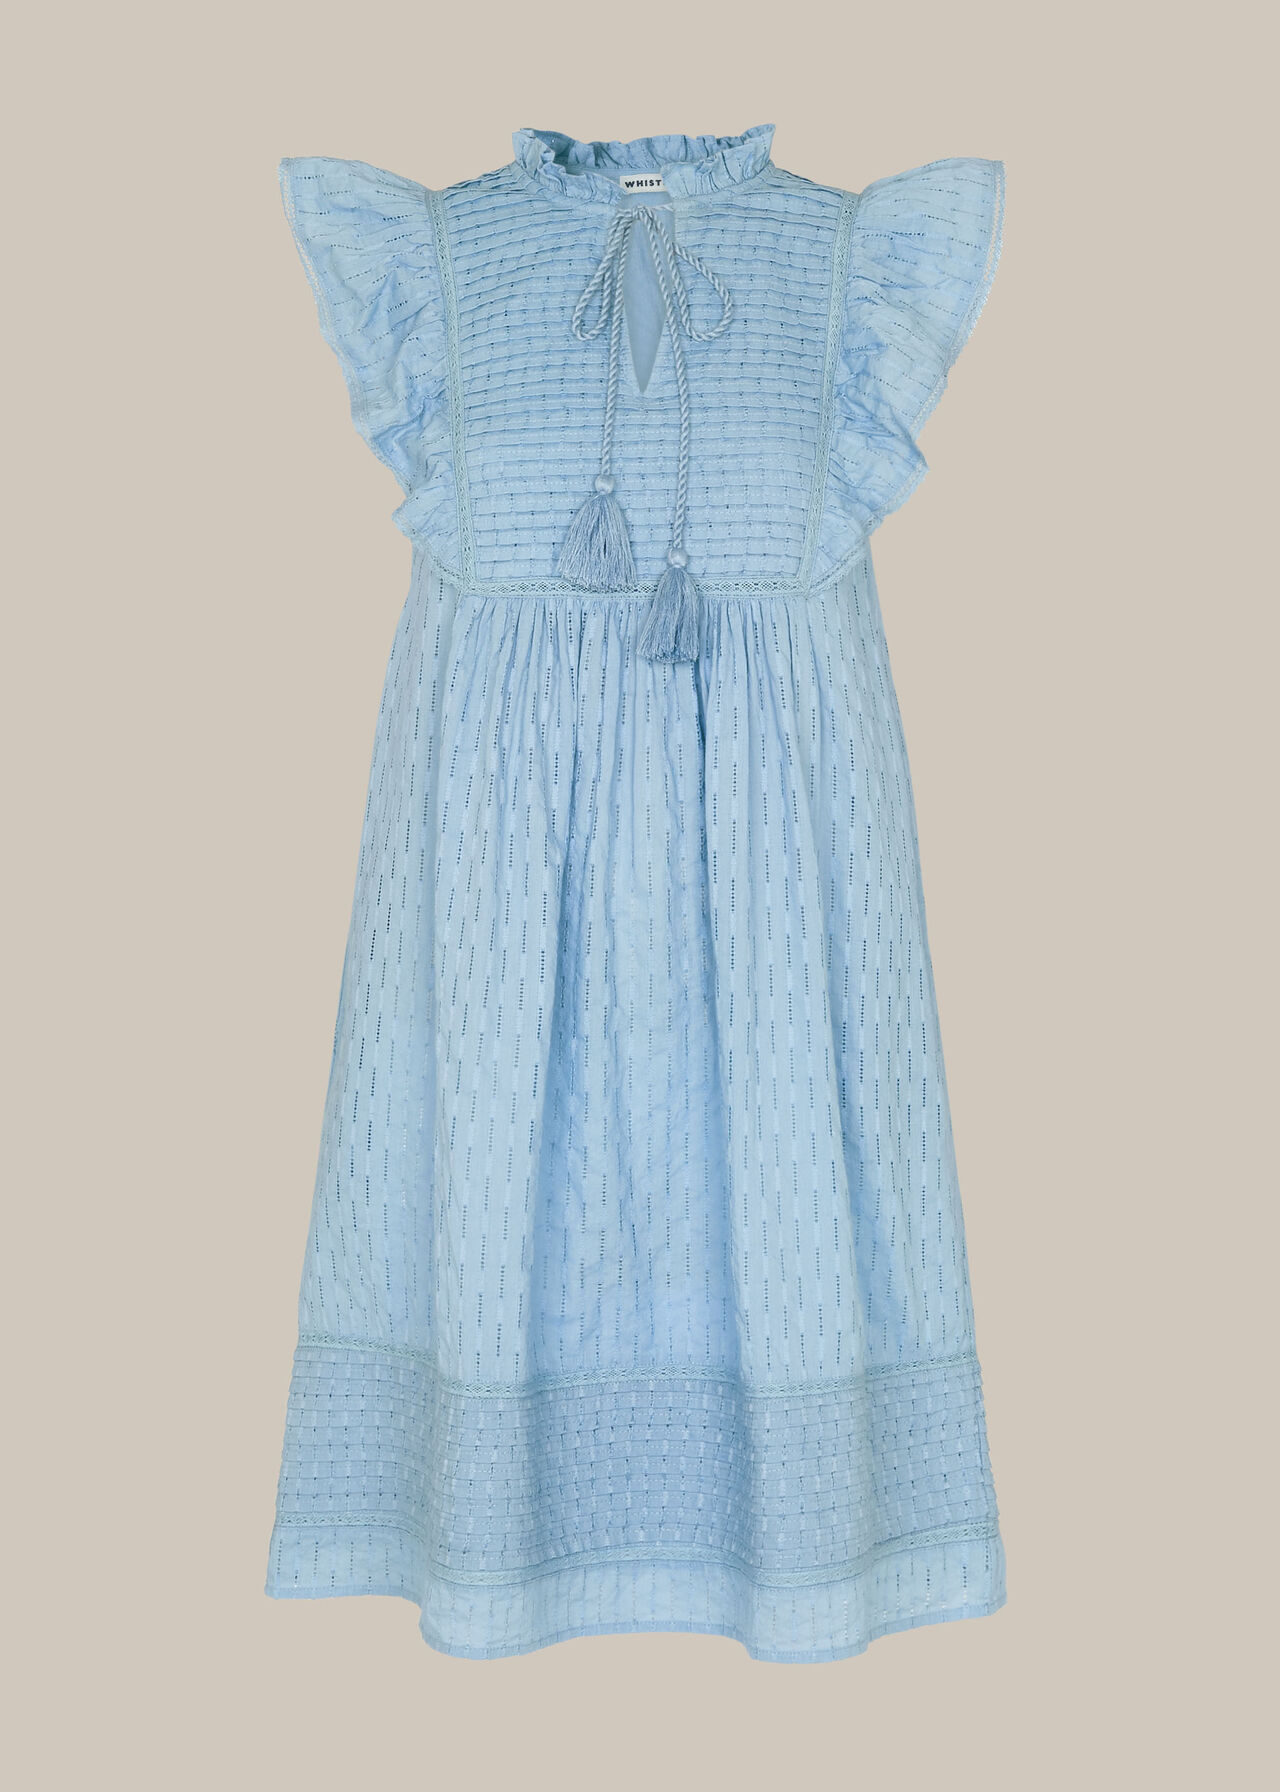 Pintuck Frill Cotton Dress Blue